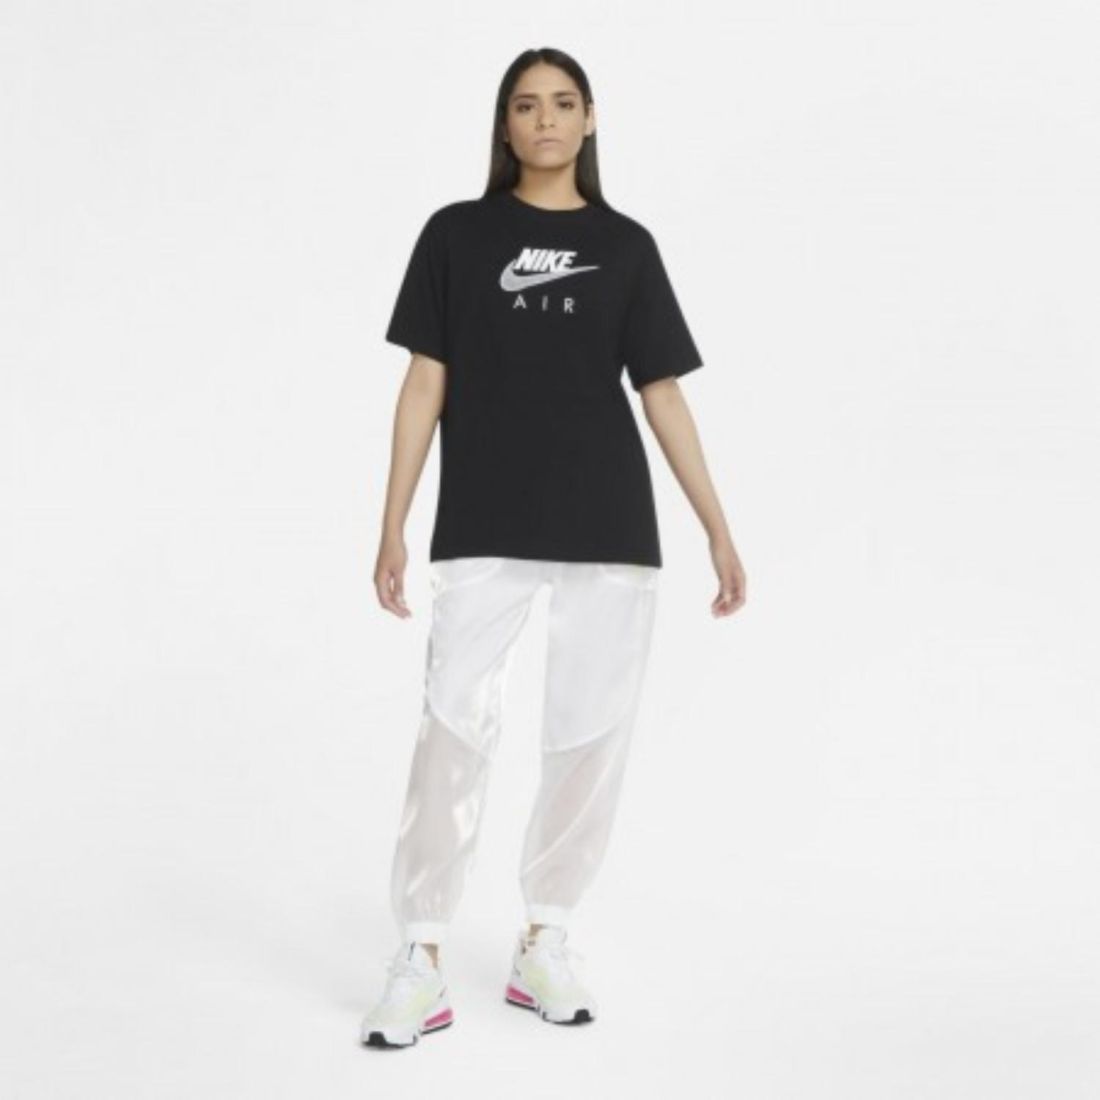 Удобная женская футболка Nike Air